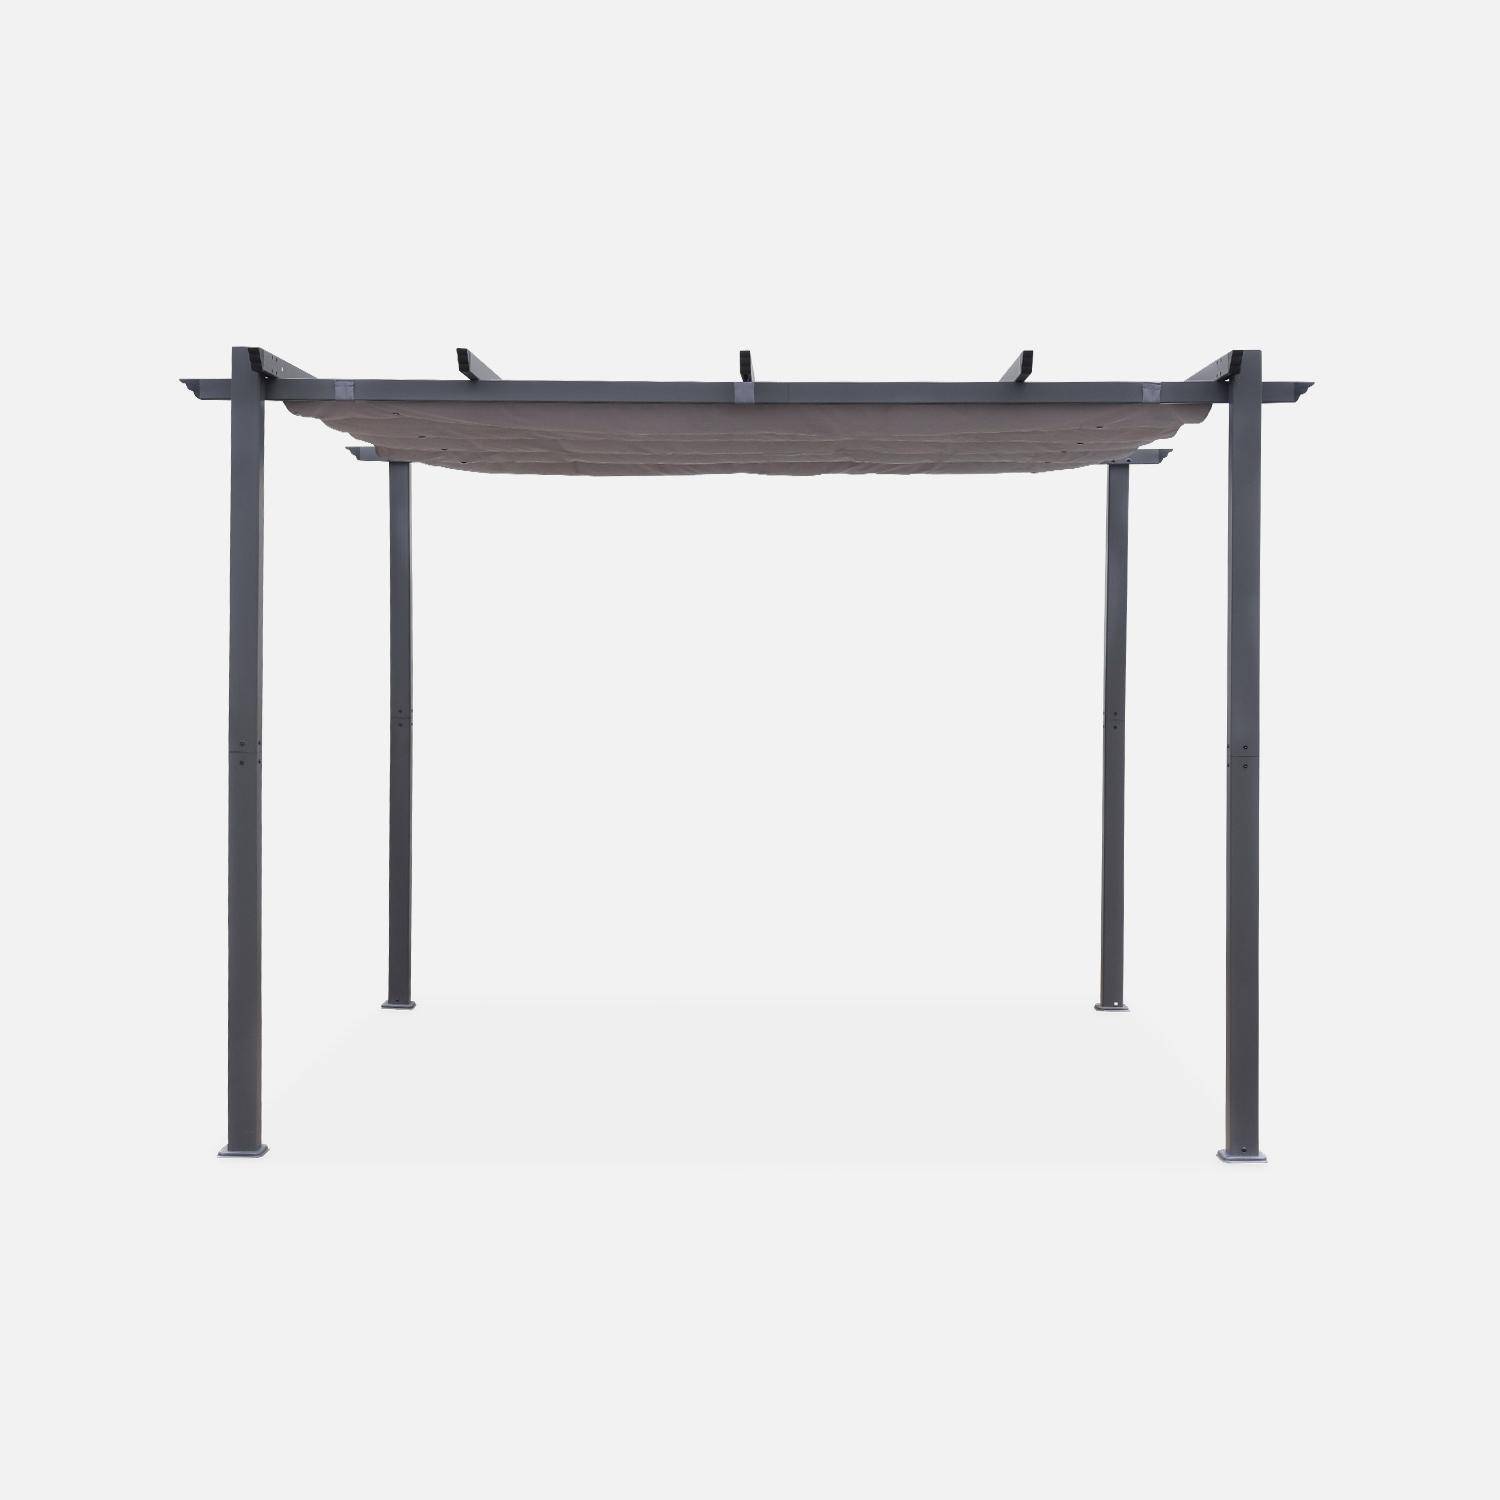 Pergola aluminium - Isla 3x3m -  Toile grise - Tonnelle idéale pour votre terrasse, toit rétractable, toile coulissante, structure aluminium Photo2